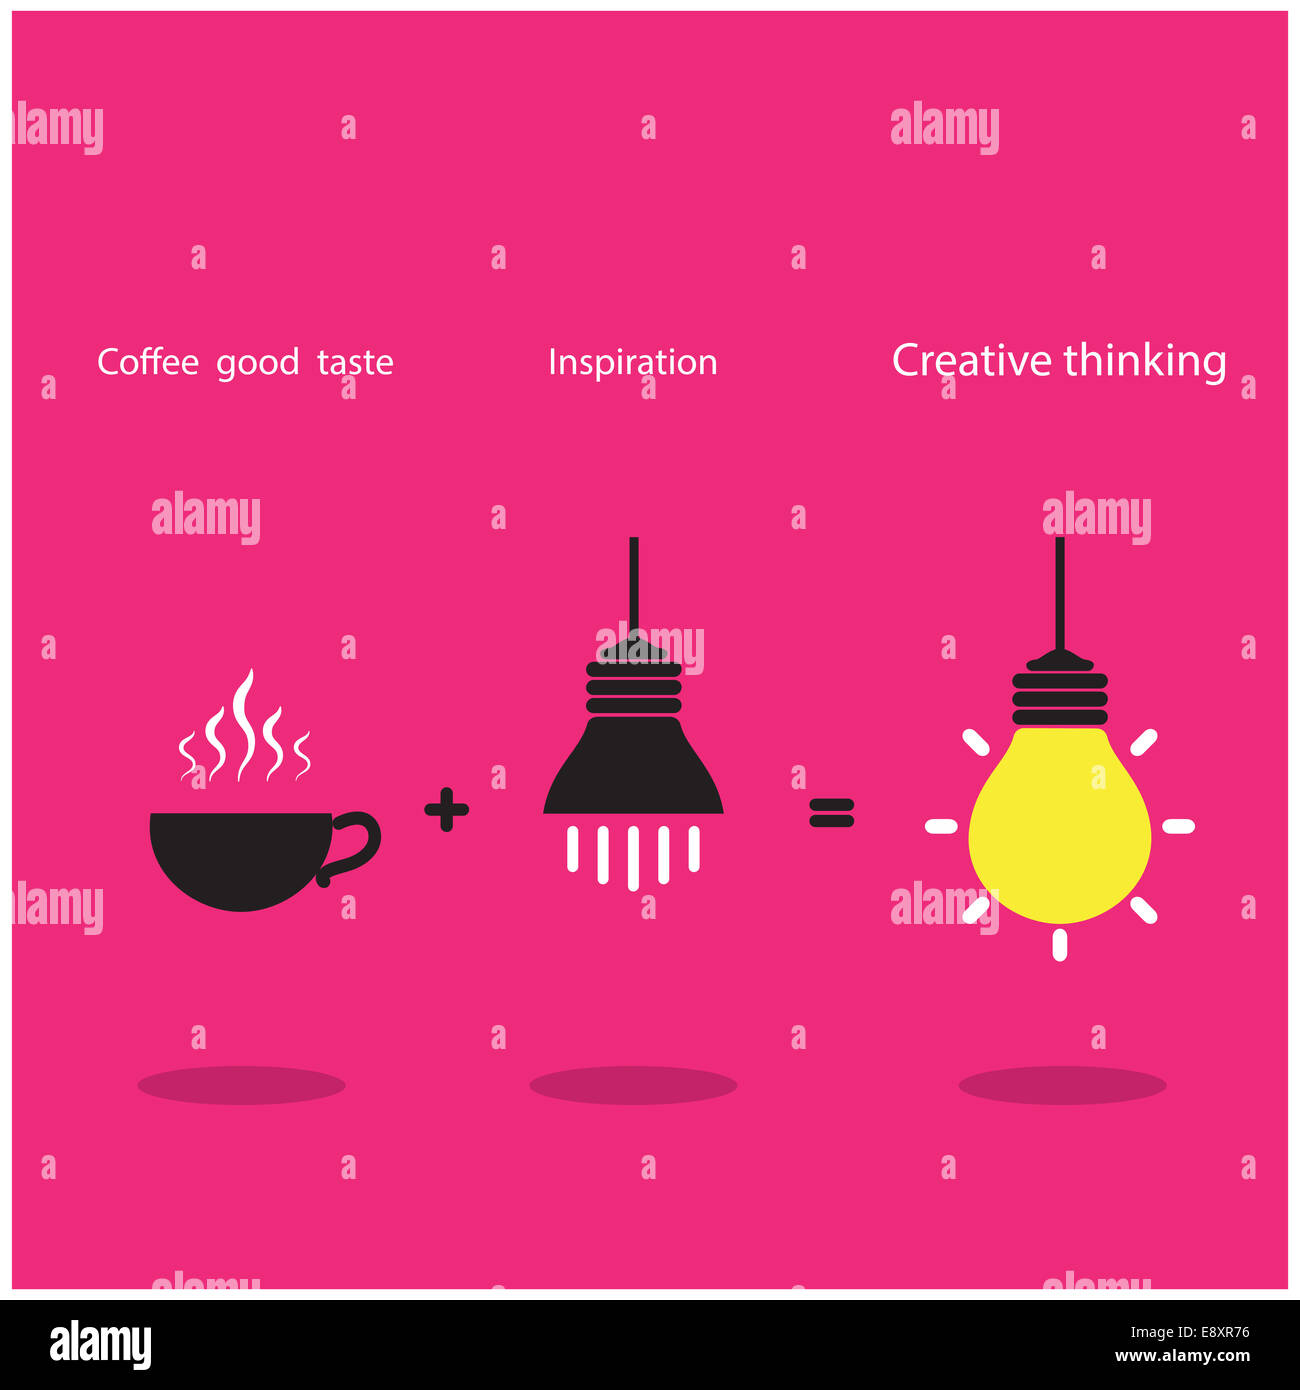 La buona idea realizzare ispirazione e caffè buon gusto può essere creato il lavoro migliore. Foto Stock